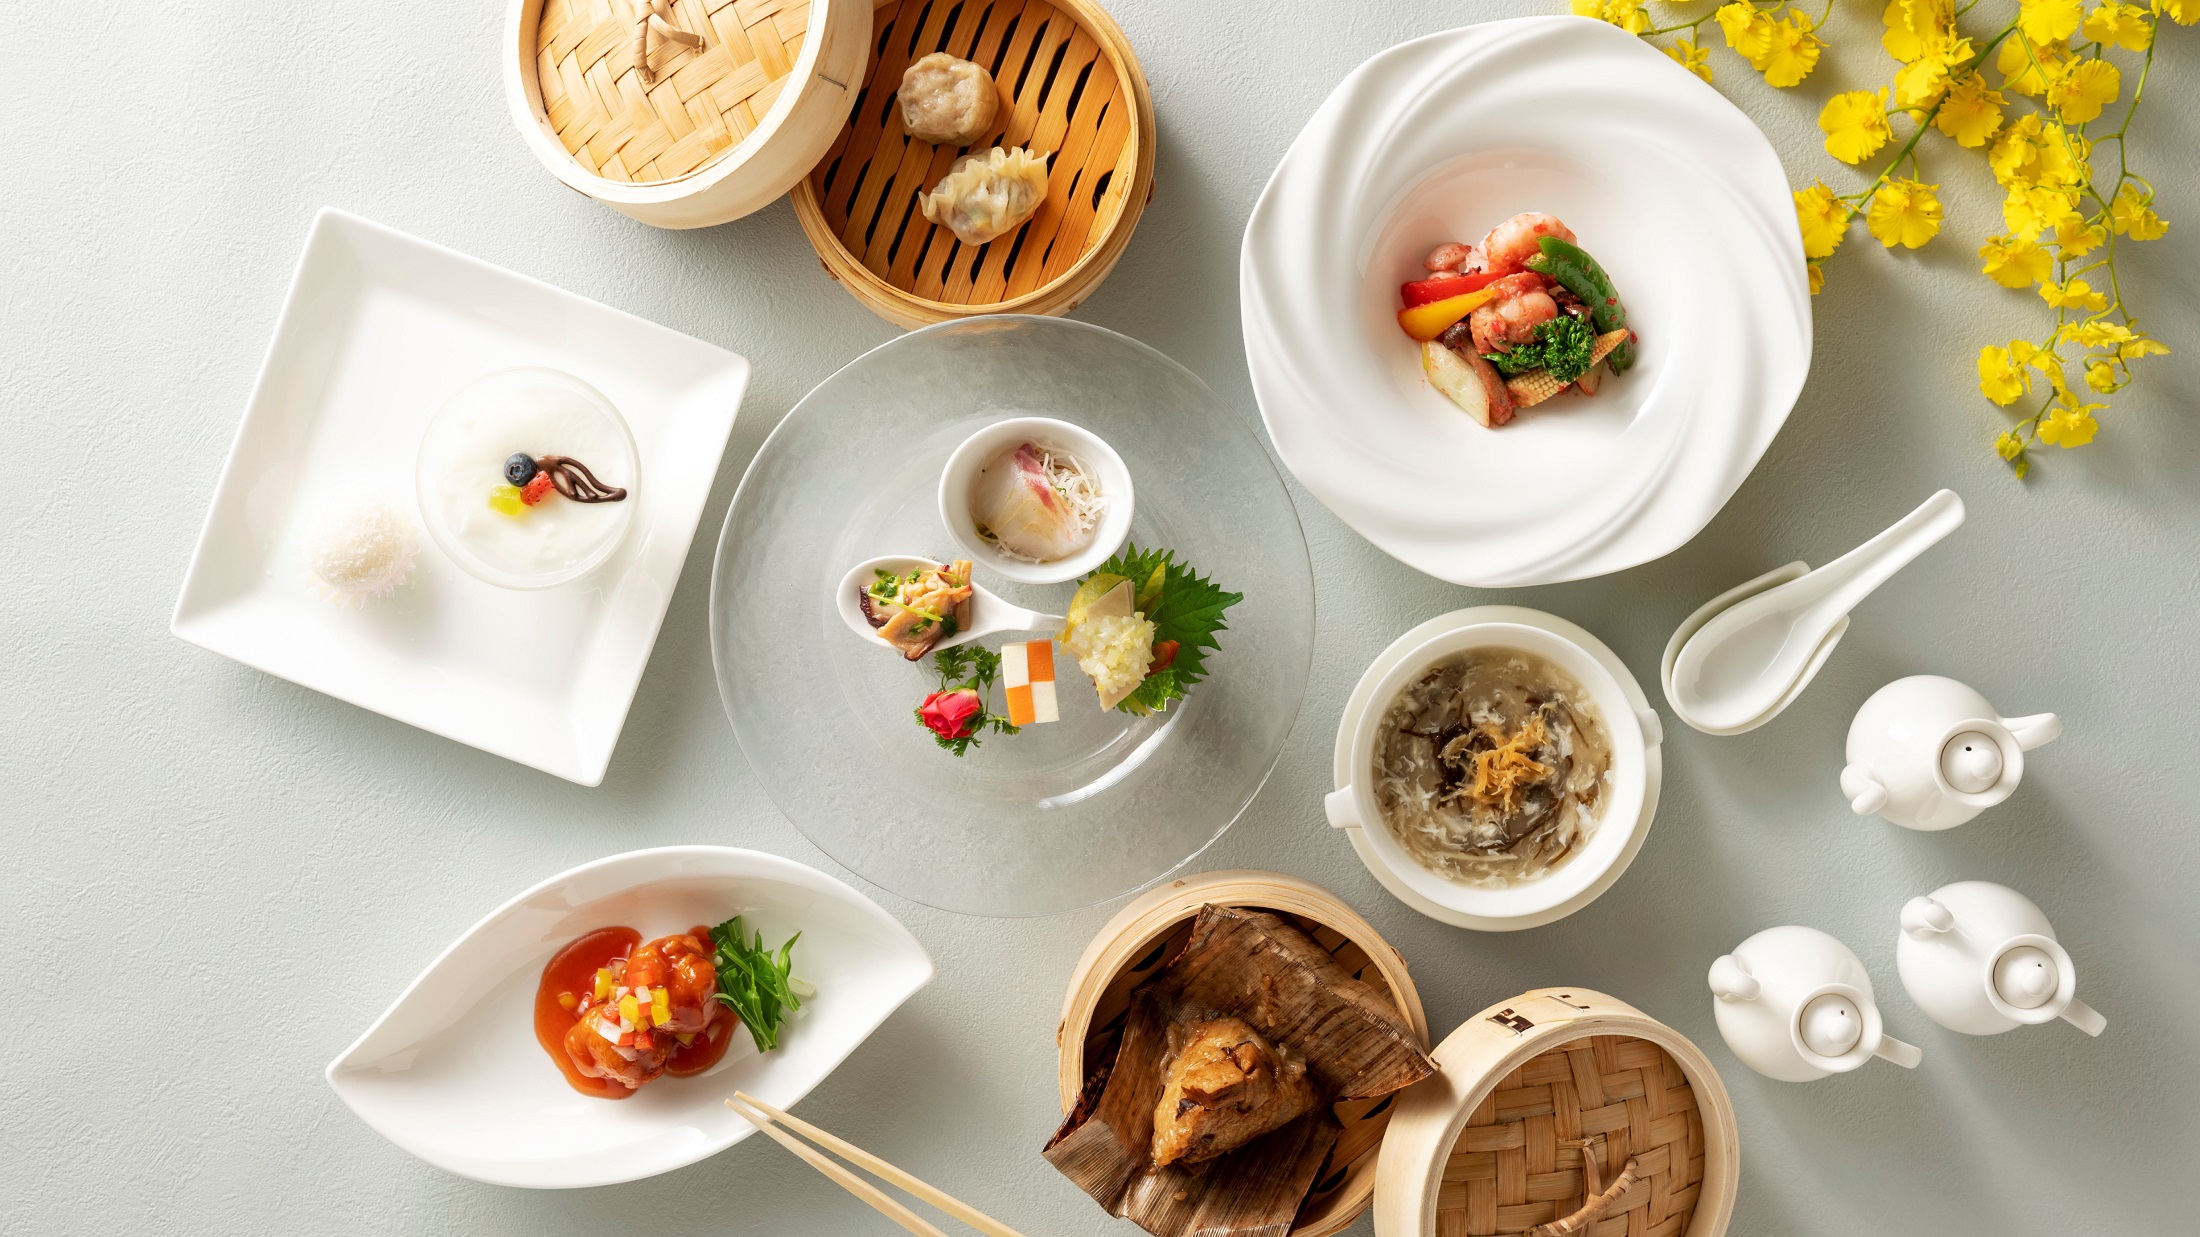 中国料理「桃李」中華なのにさっぱりと召し上がっていただける、料理長自慢の季節ランチです。